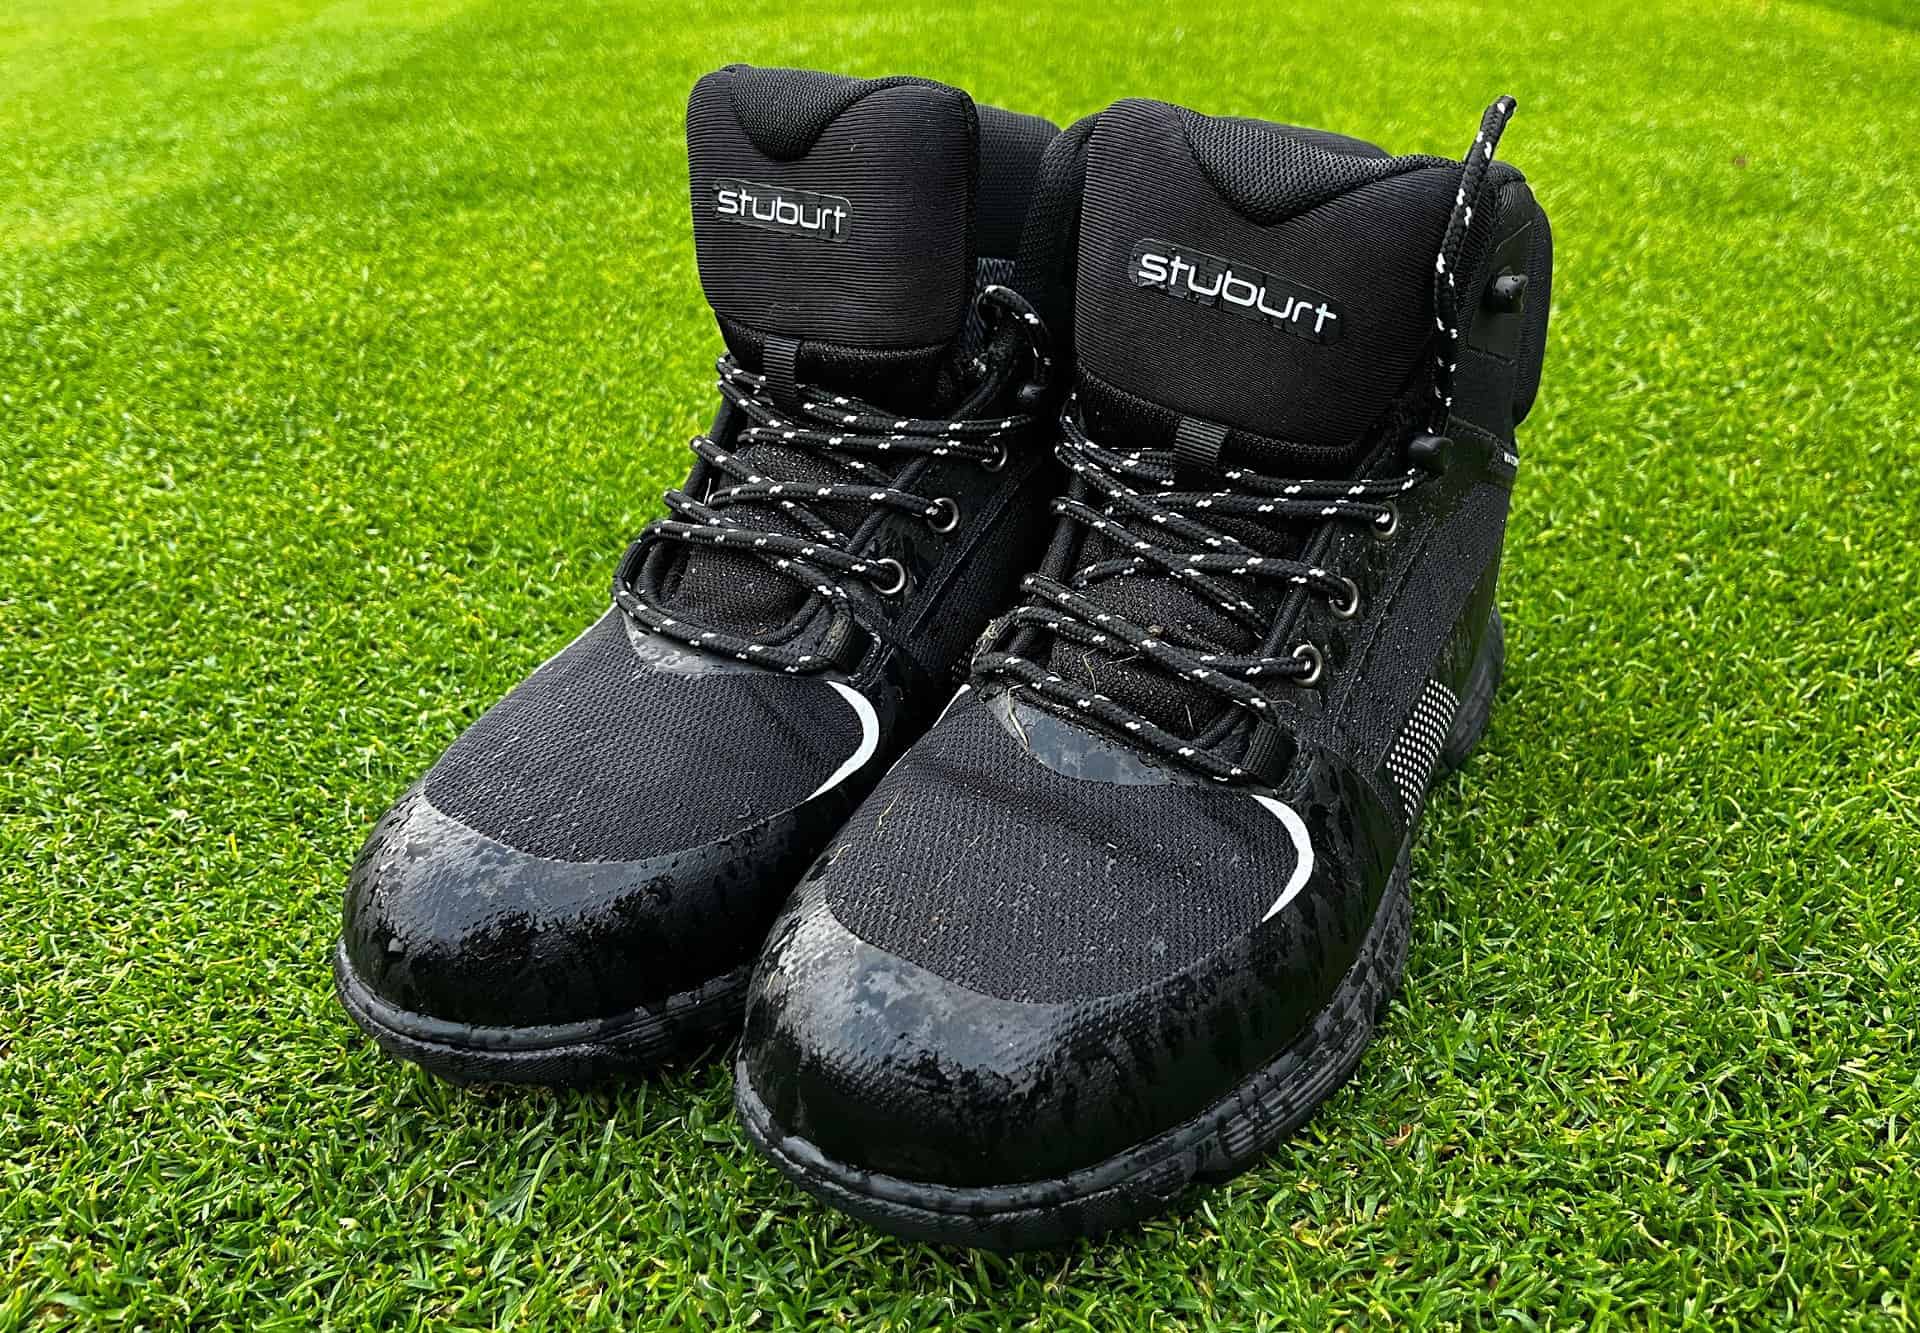 Stuburt Active-Sport golf boots review